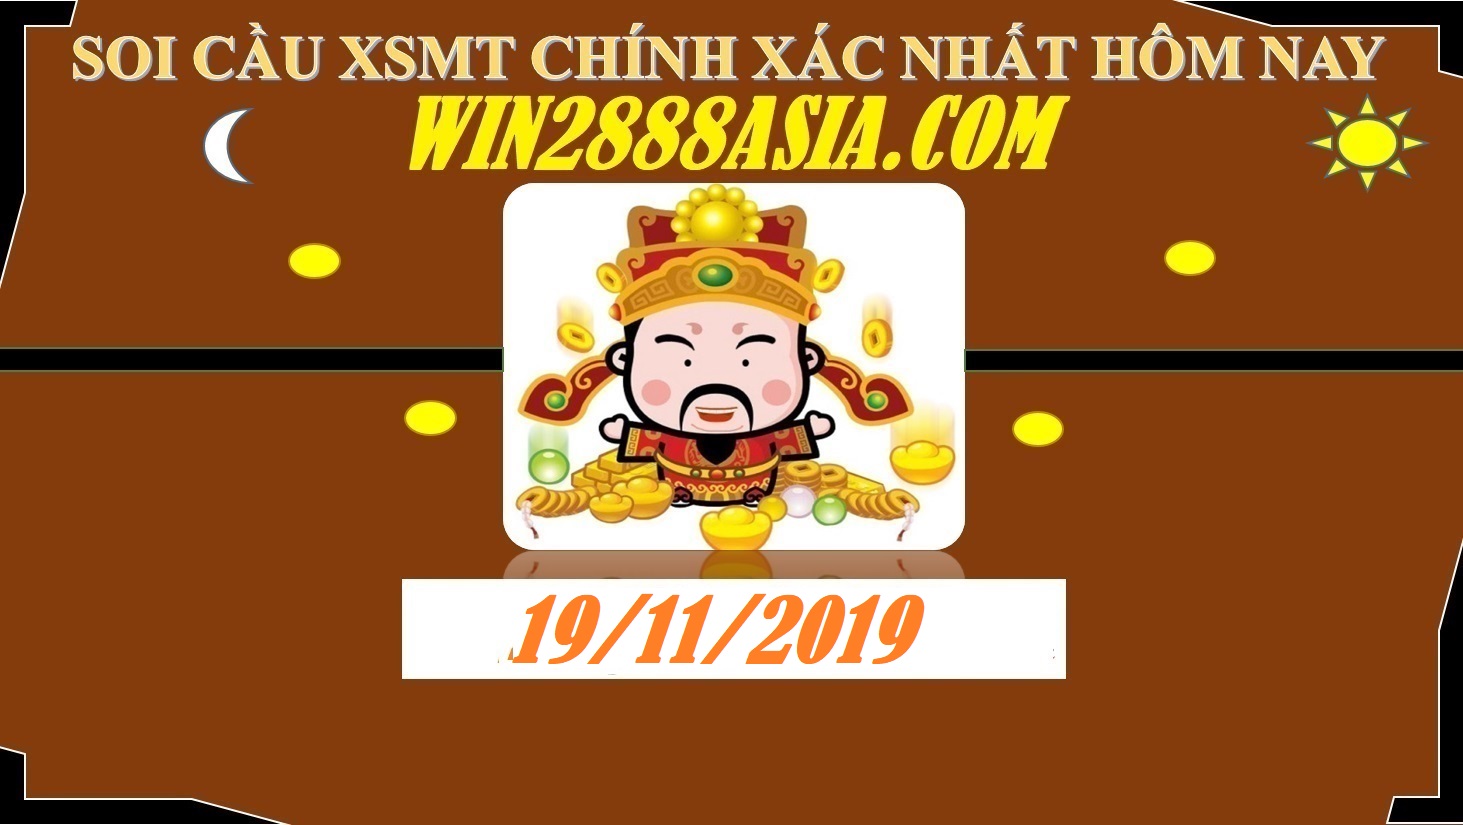 Soi cầu XSMT 19-11-2019 Win2888